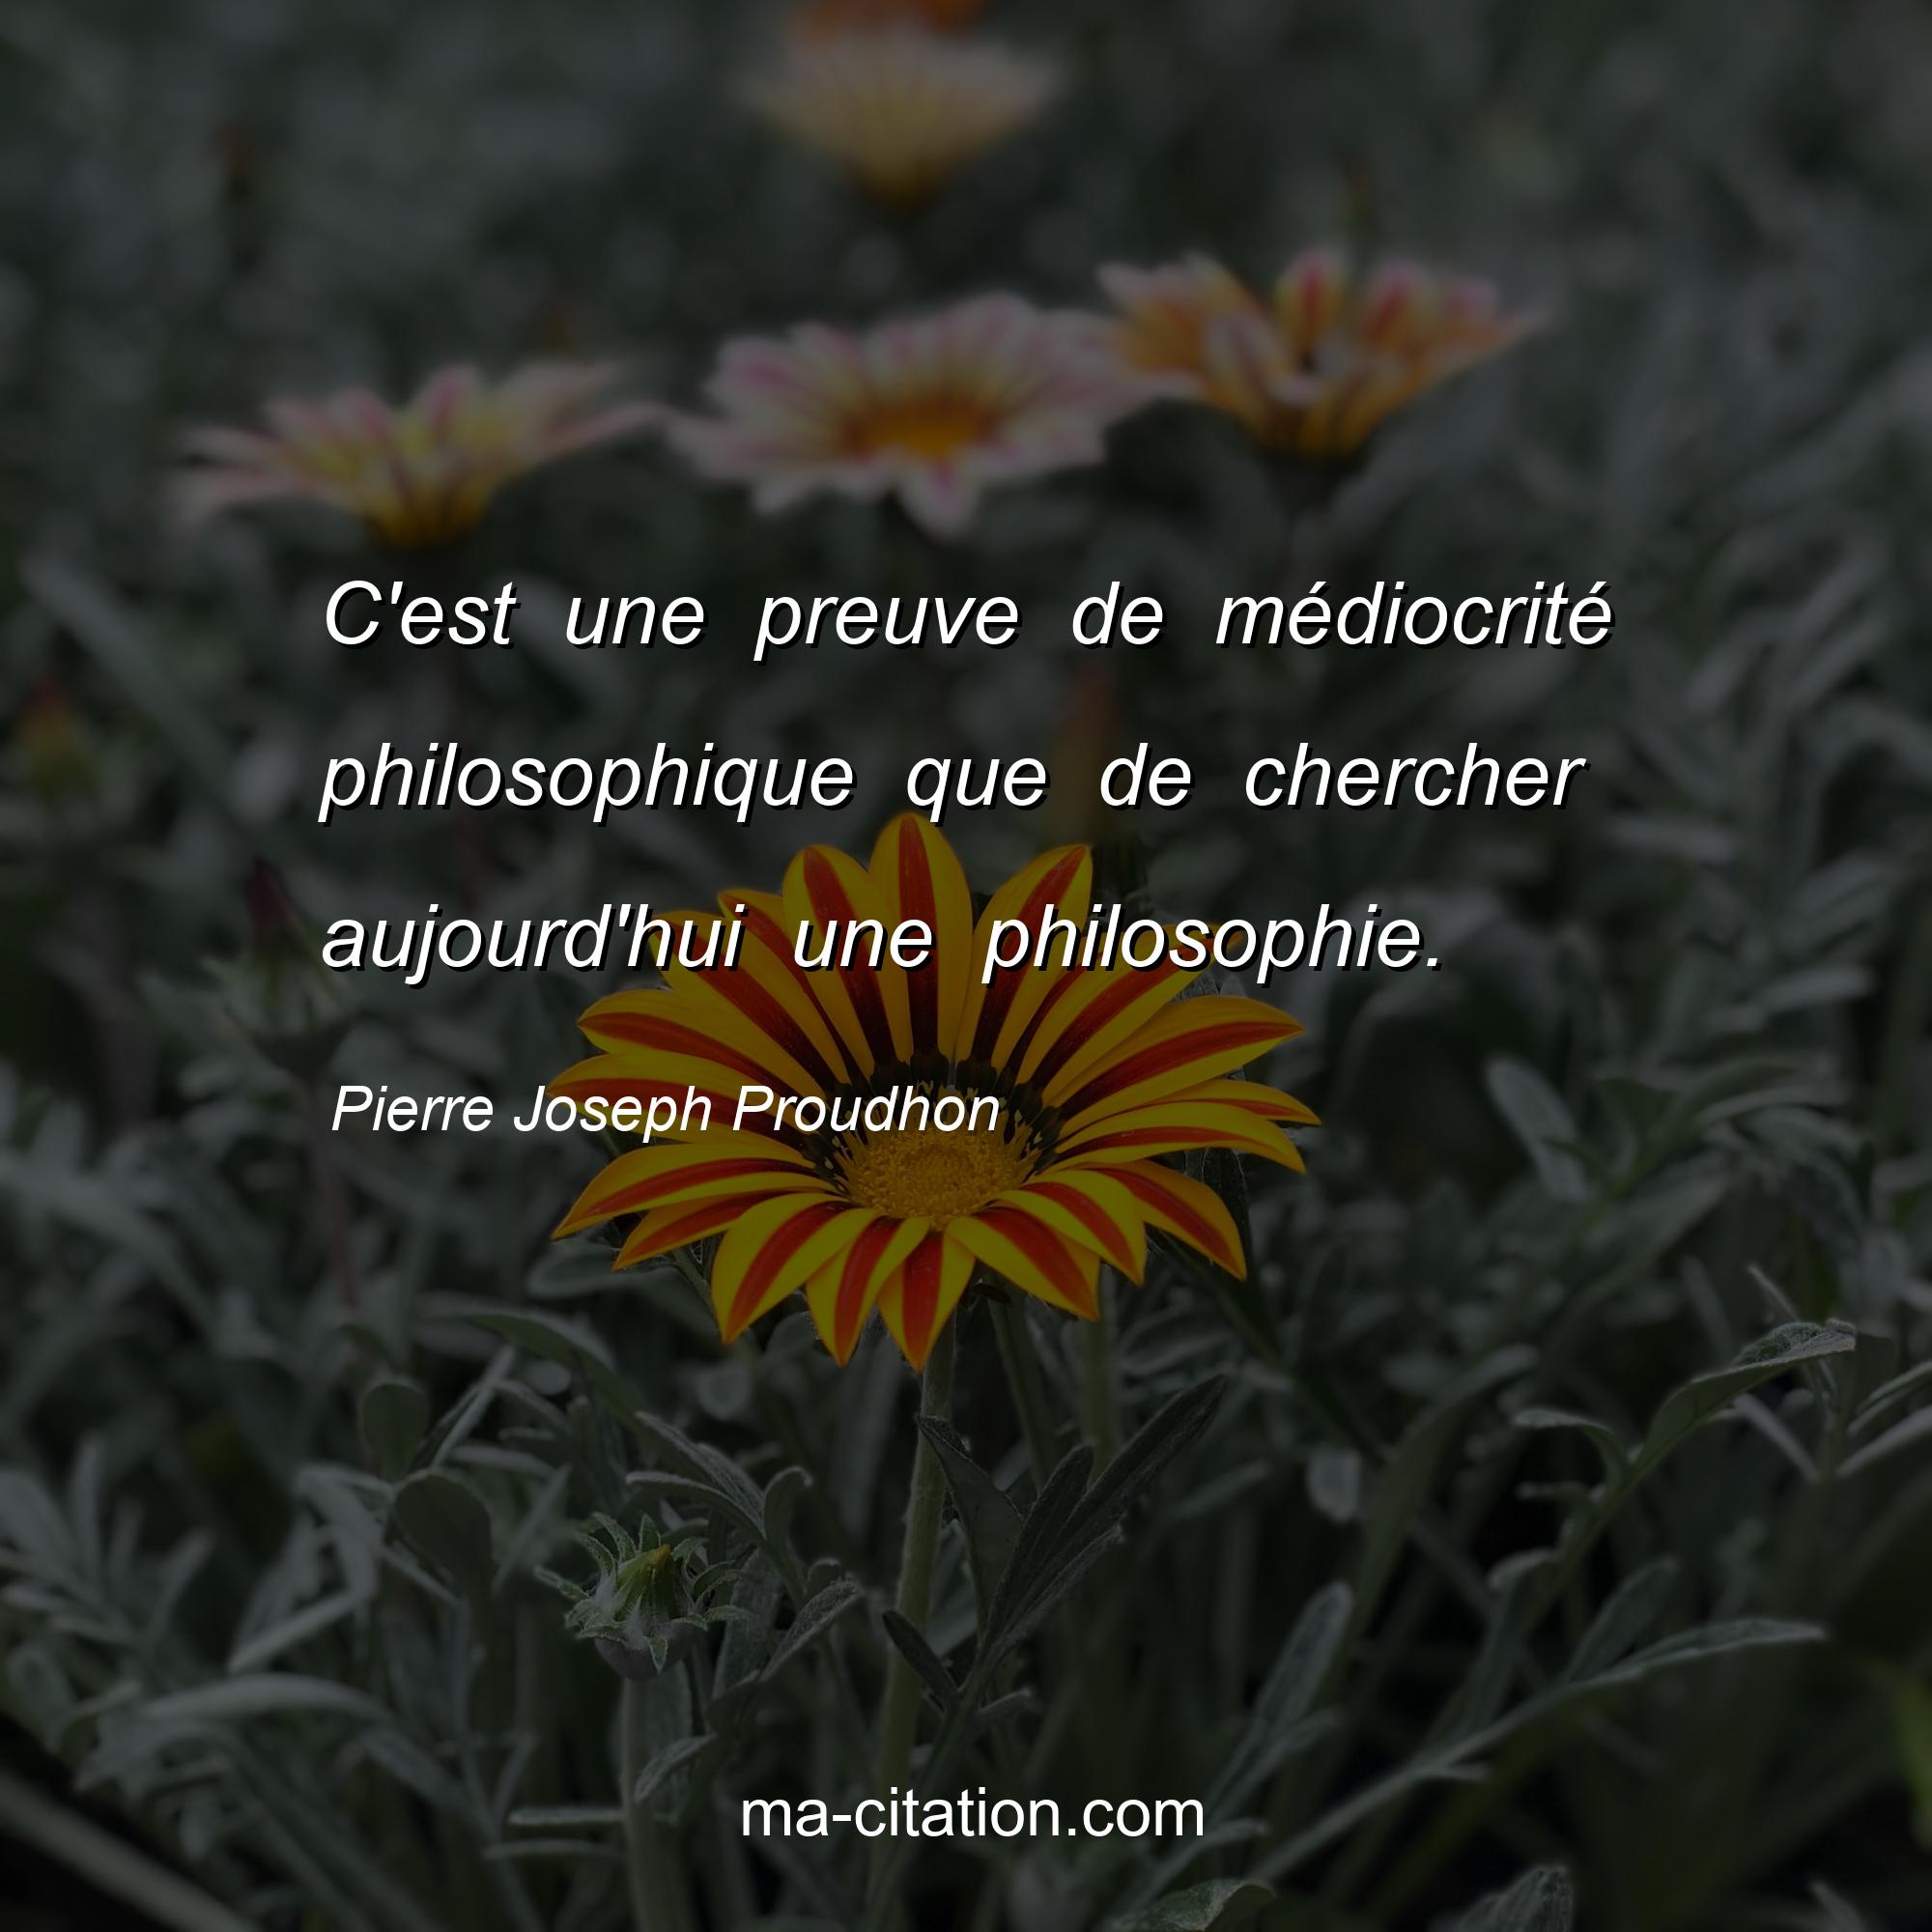 Pierre Joseph Proudhon : C'est une preuve de médiocrité philosophique que de chercher aujourd'hui une philosophie.